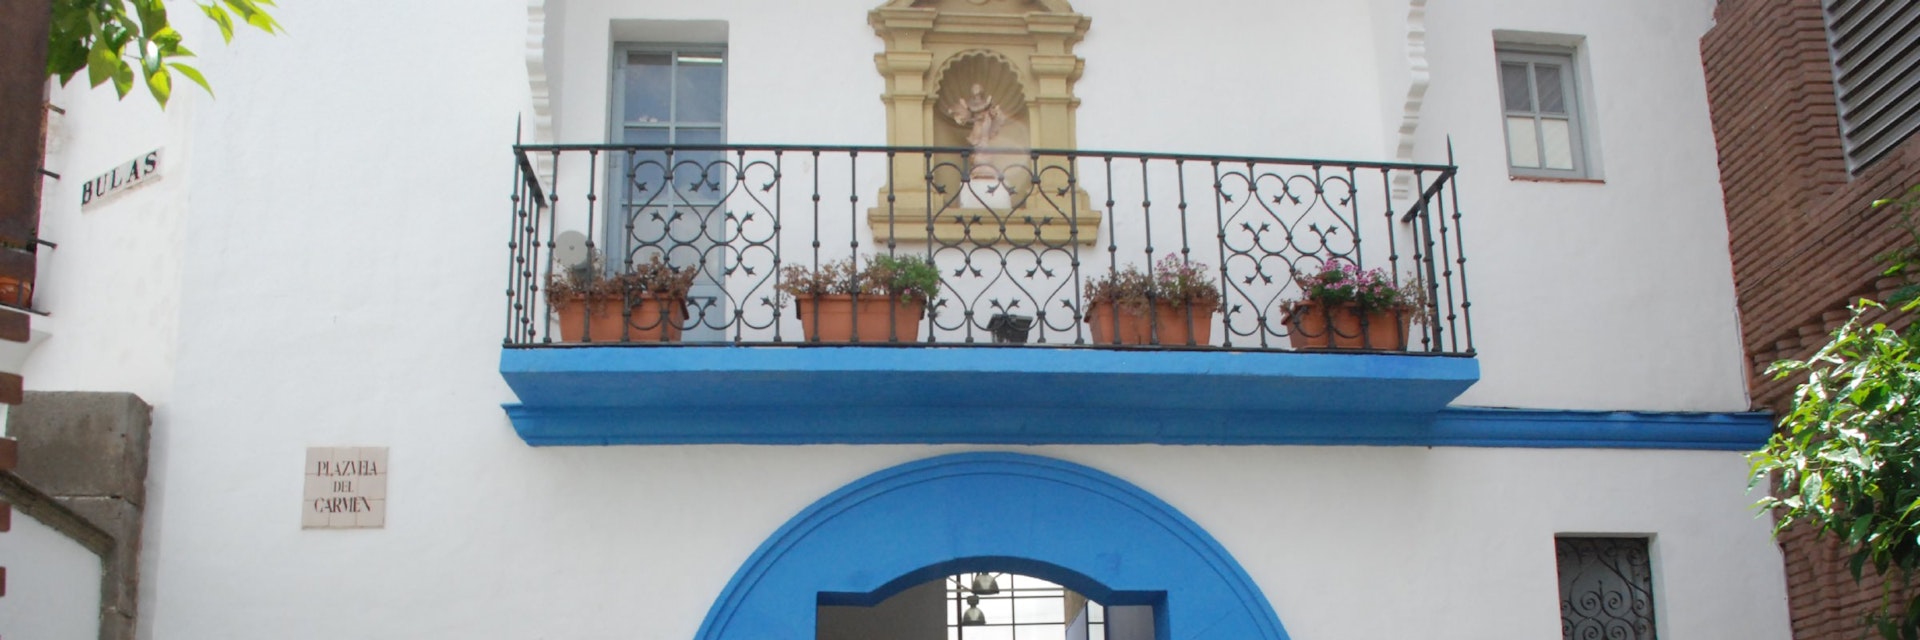 Entrance to Fundació Fran Daurel